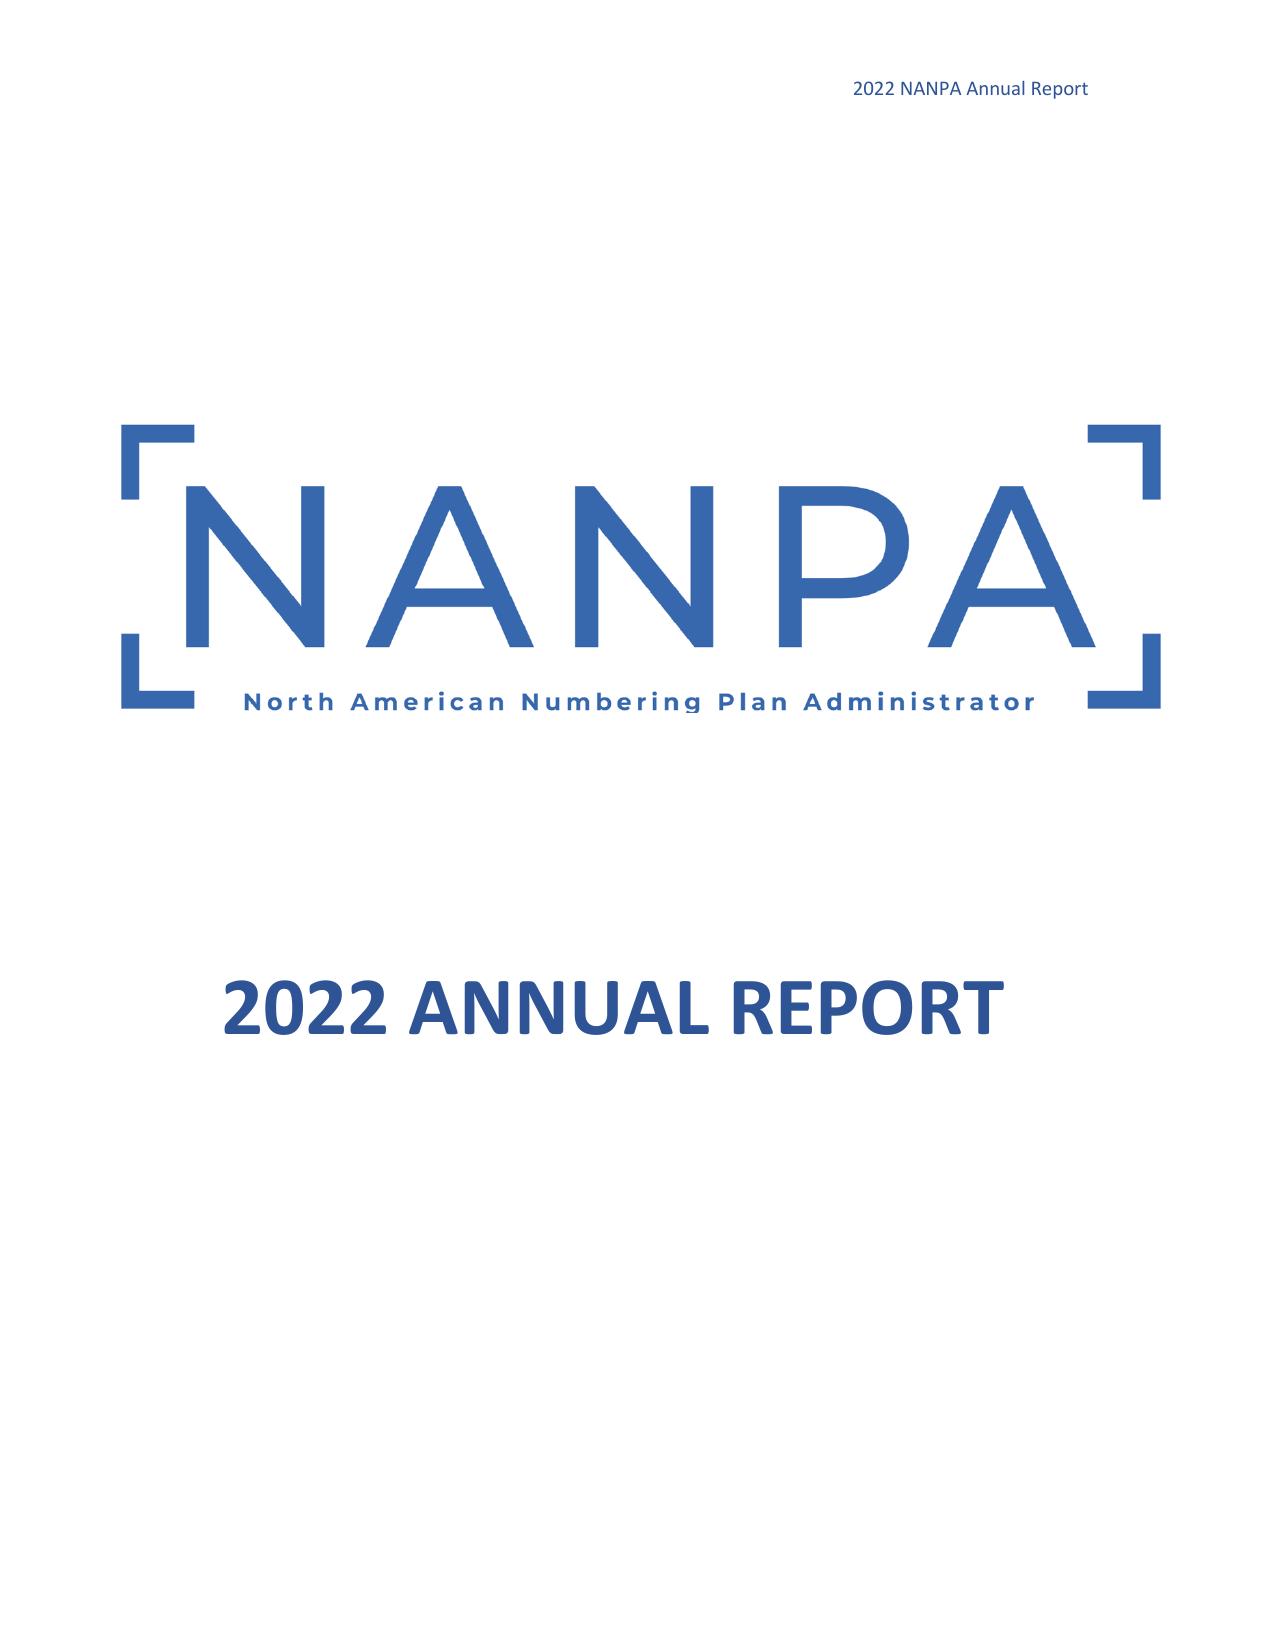 NATIONALNANPA 2022 Annual Report